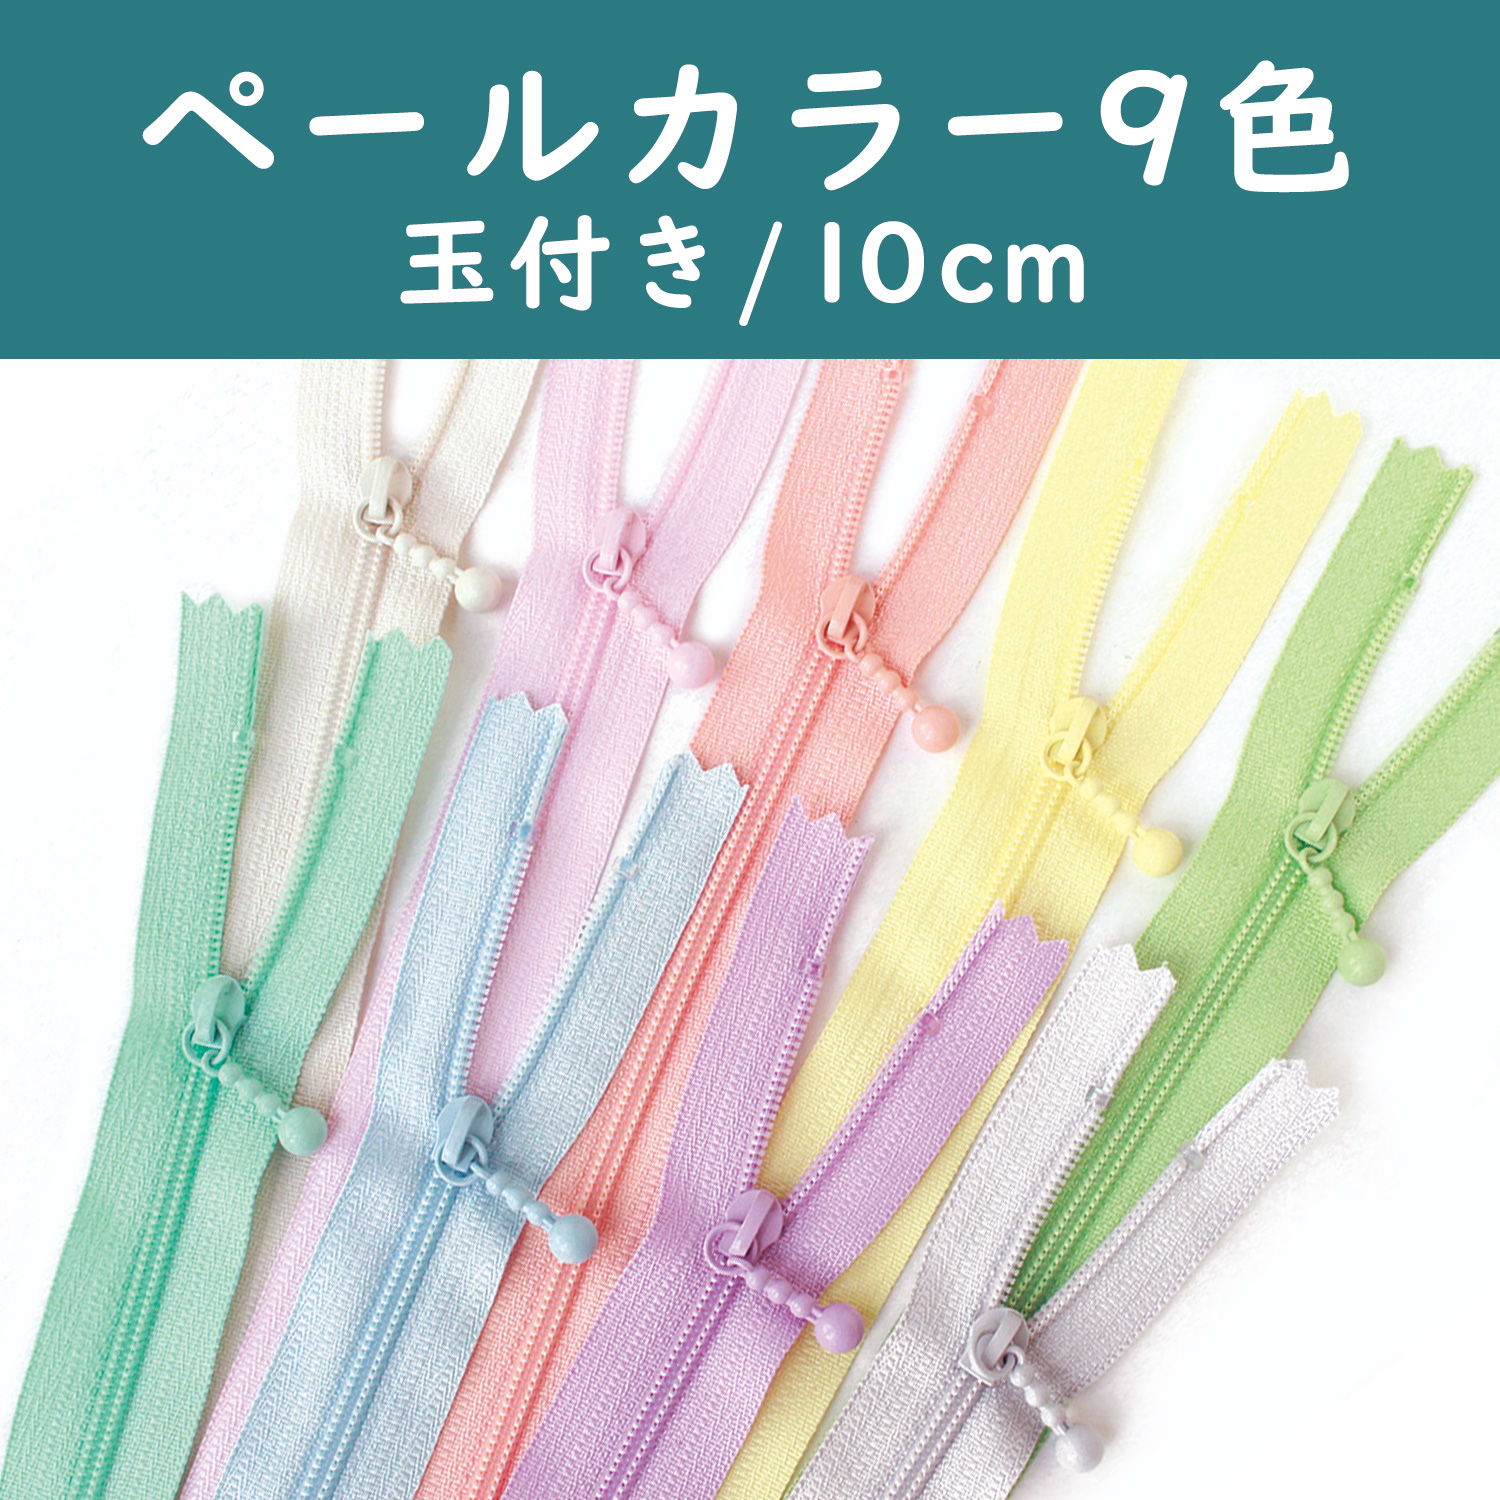 3CF10-PLMIX Pouch Fastener/Zipper Pale Color 10cm 9 Colors Set (bag)